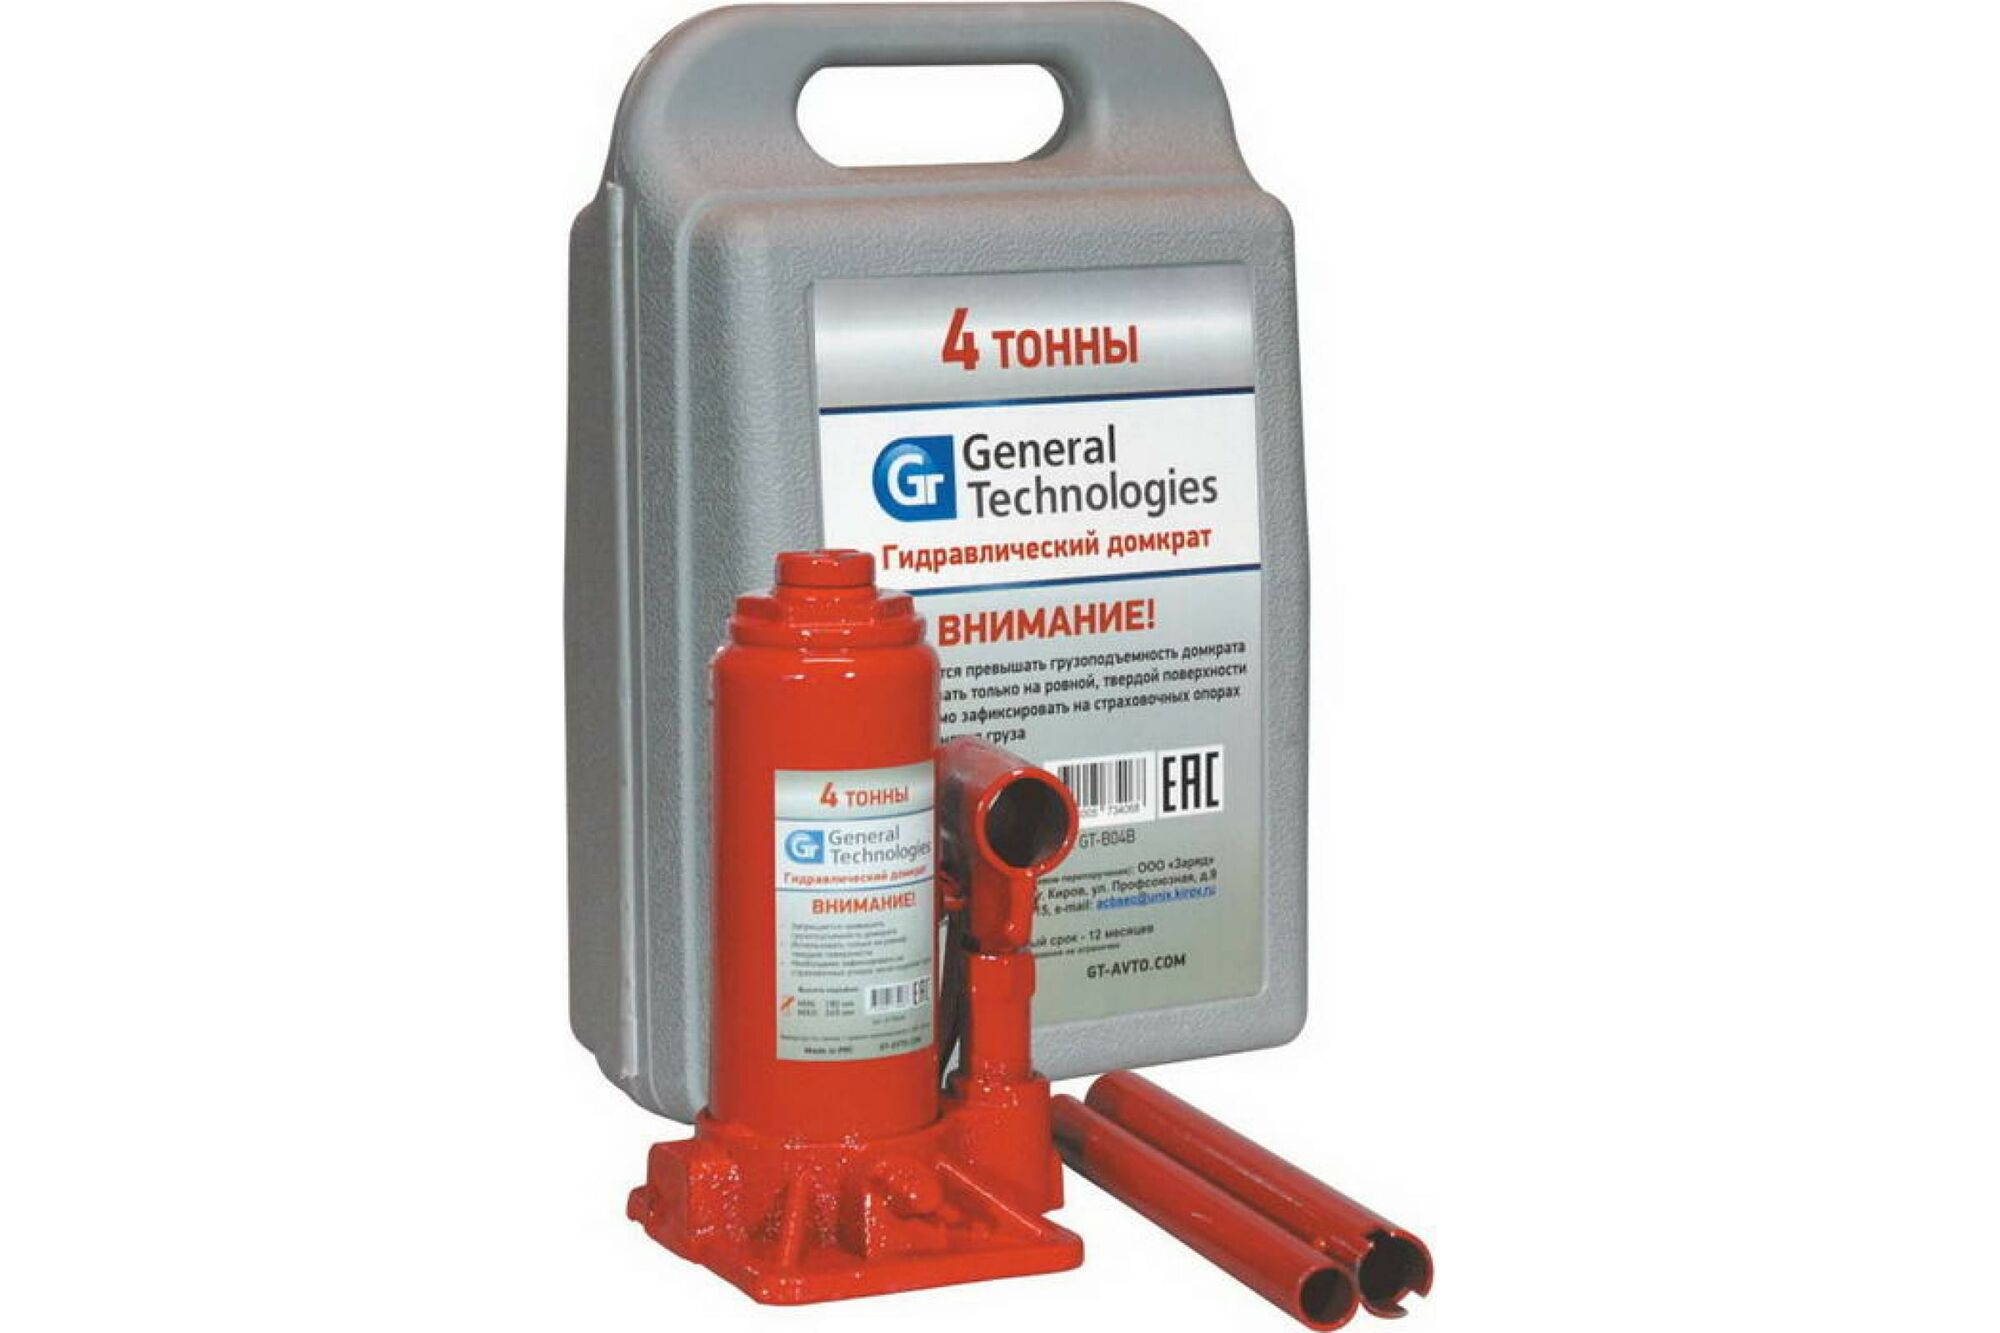 Гидравлический бутылочный домкрат General Technologies 4 т, 180-345 мм GT-B04B